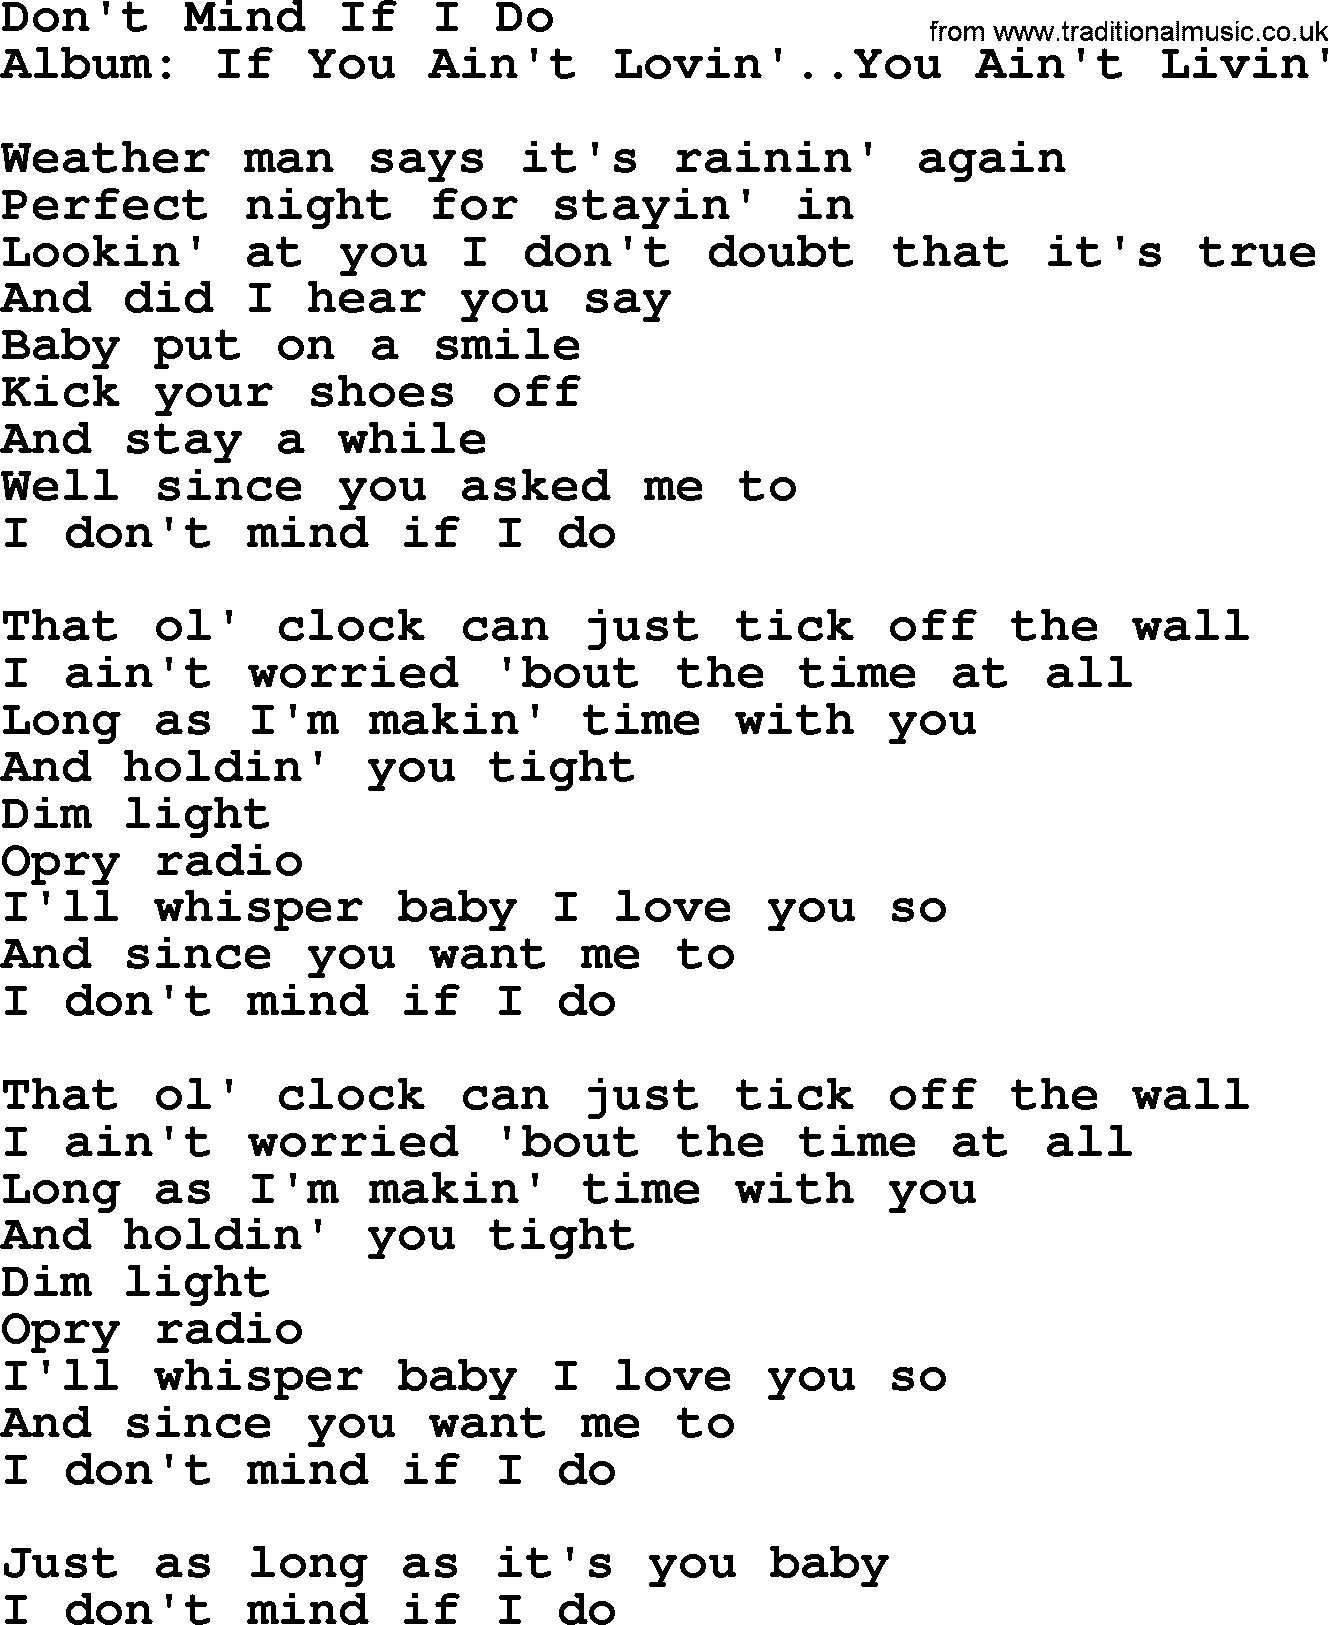 George Strait song: Don't Mind If I Do, lyrics